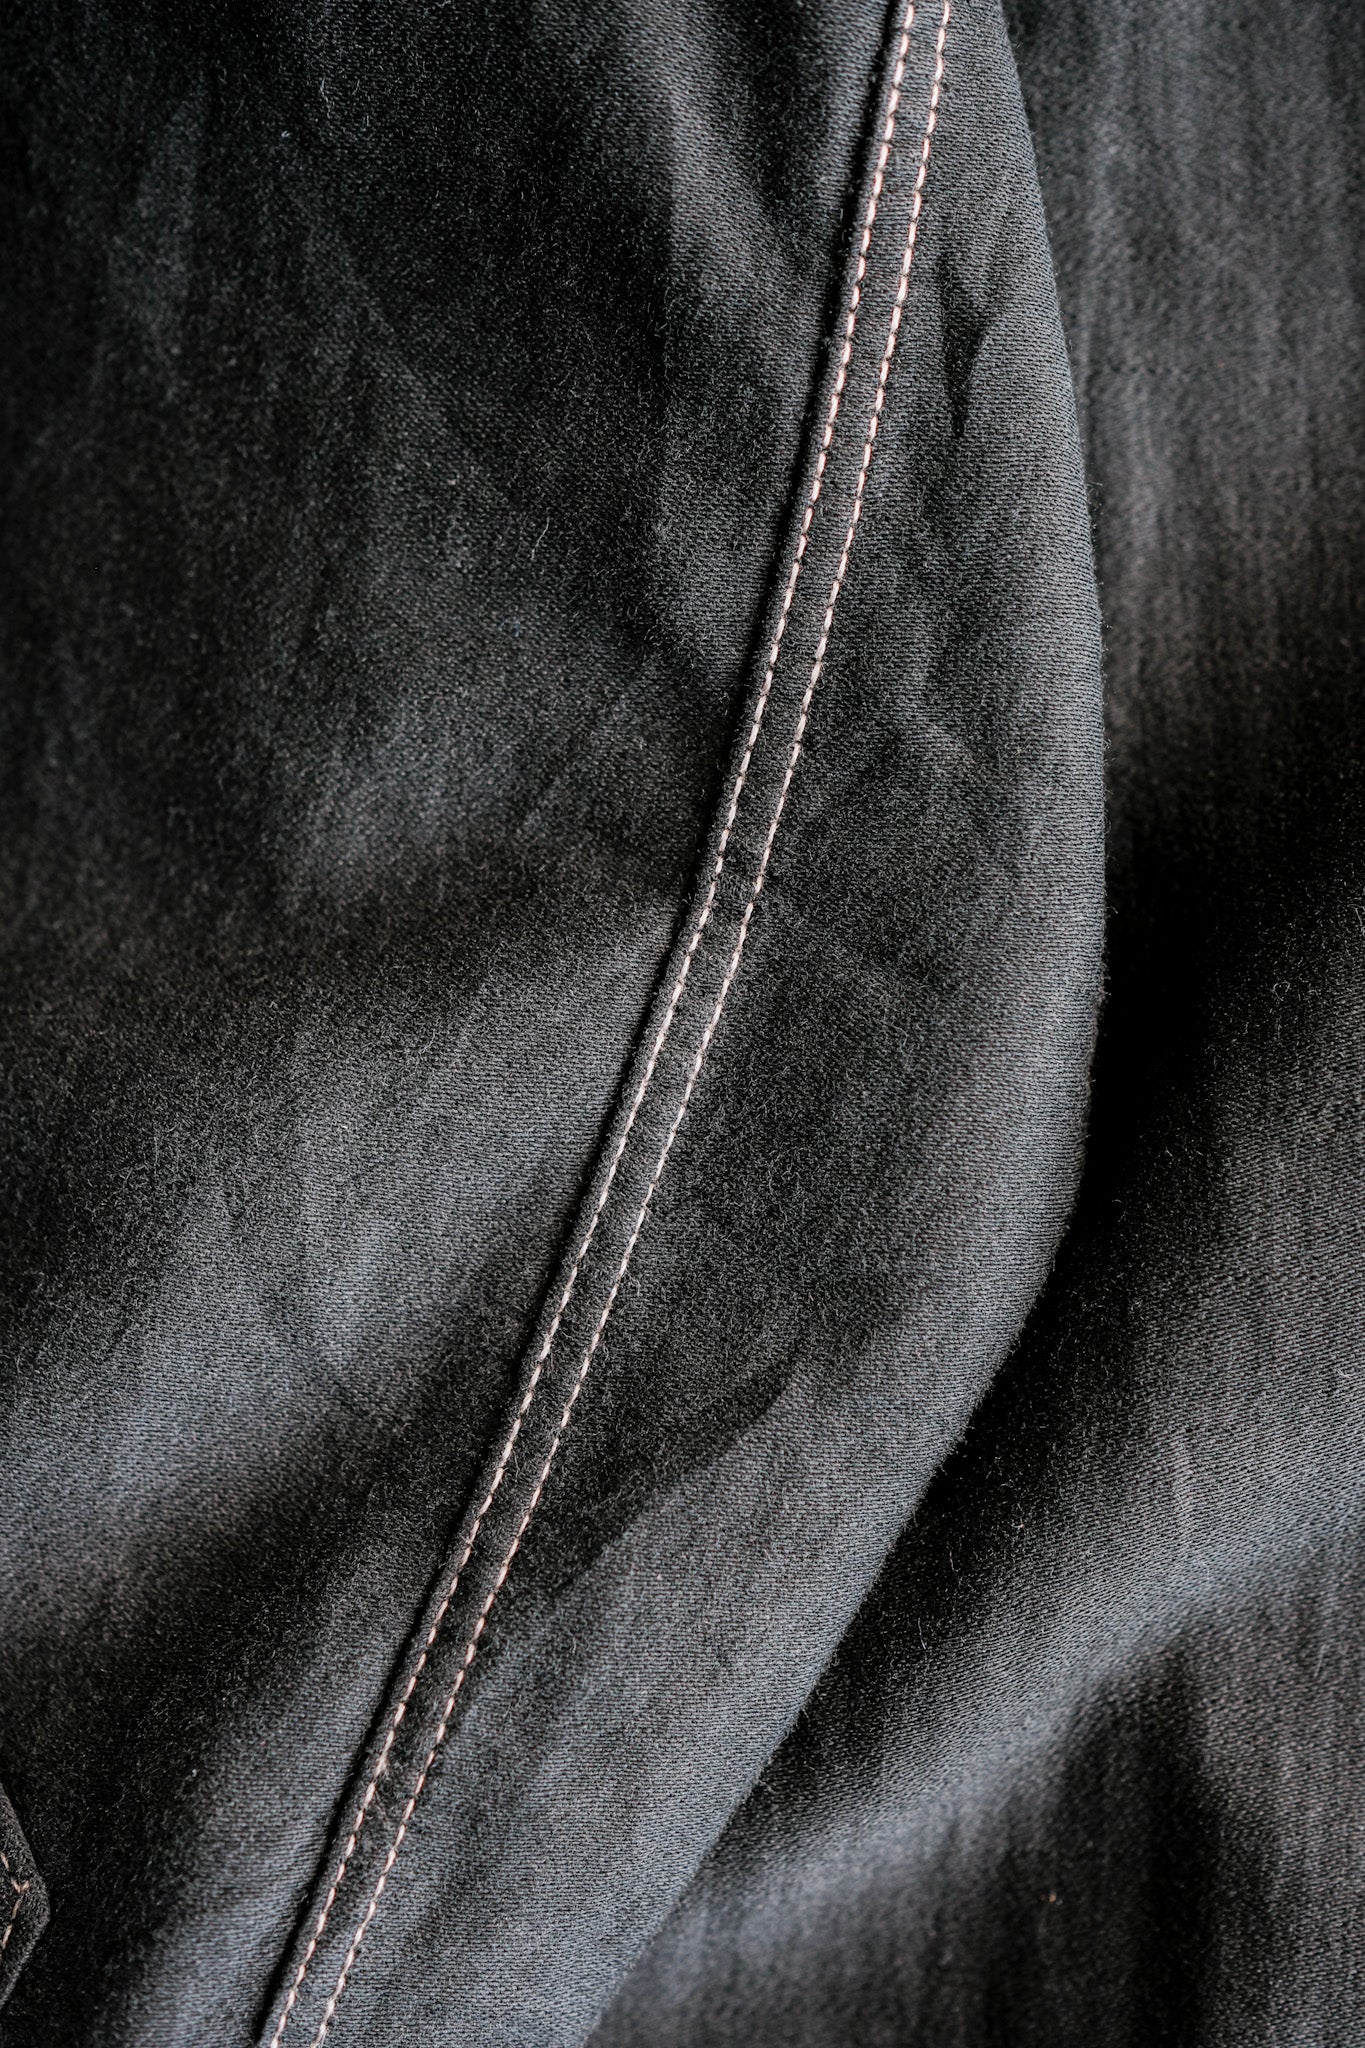 [〜30年代]法國復古黑燈摩爾斯爺爺襯衫